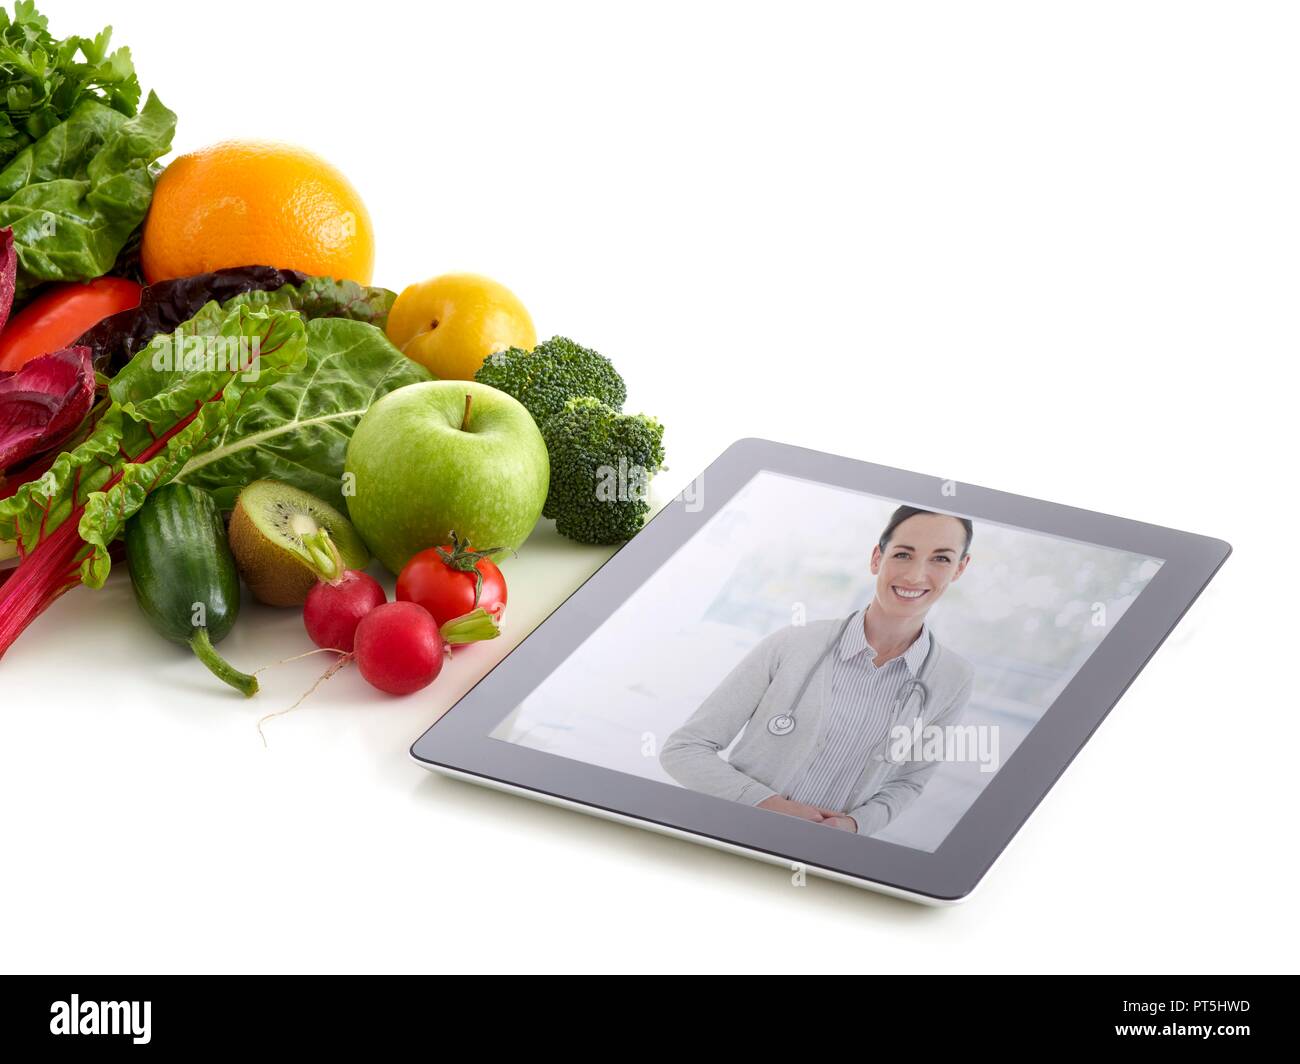 Frisches Obst und Gemüse mit Doctor's Bild auf digital Tablet, Studio gedreht. Stockfoto